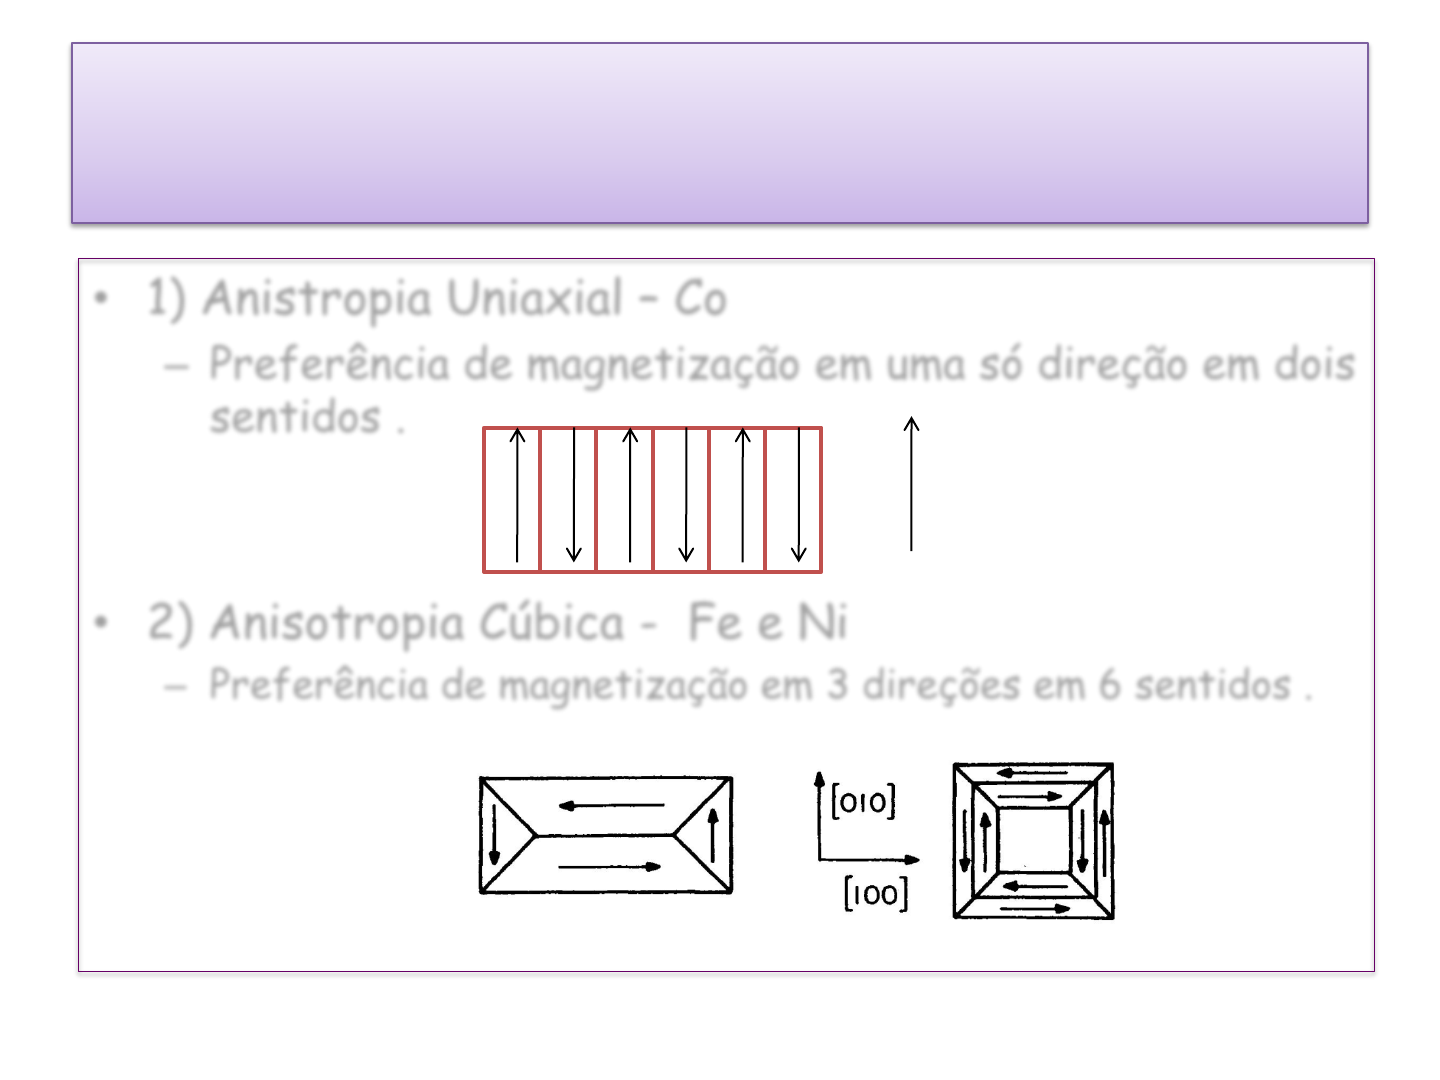 Anisotropia Magnética - Quimica Organica Funcional